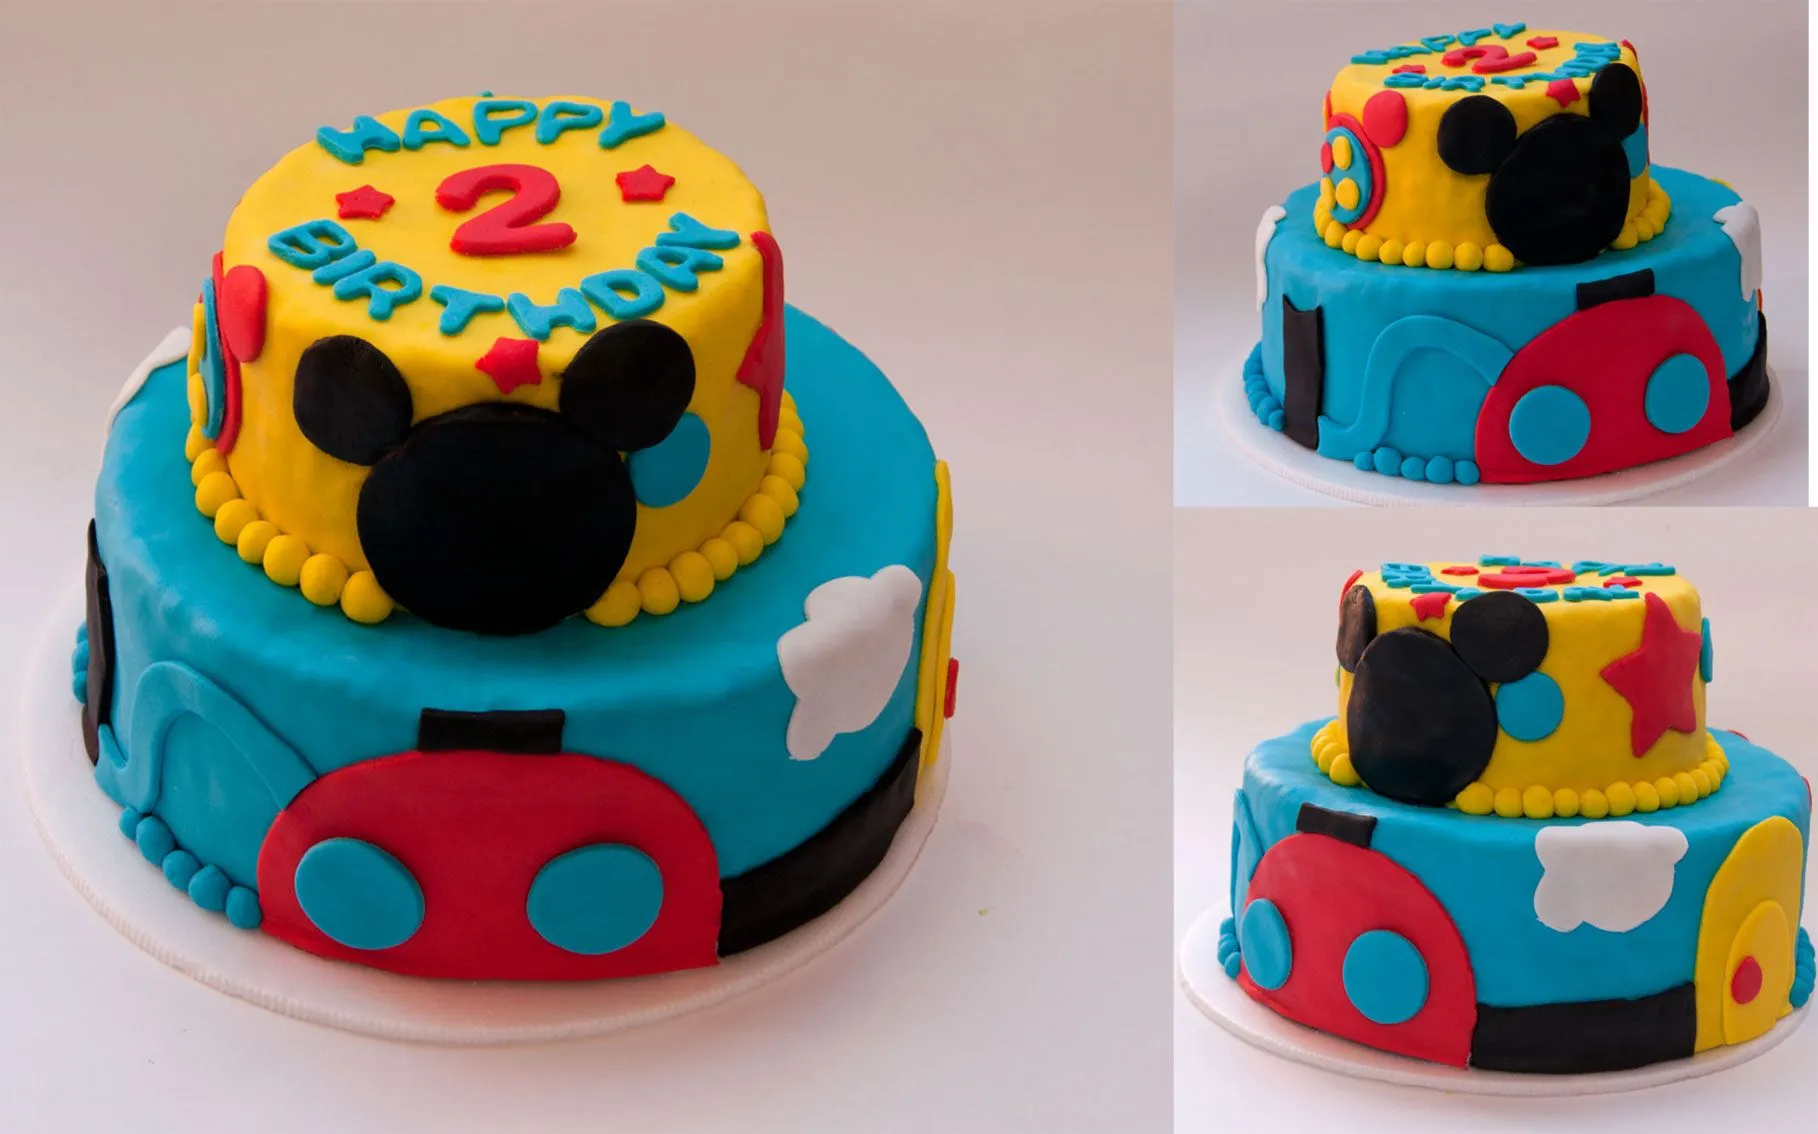 Pasteles de cumpleaños de Mickey Mouse - Imagui